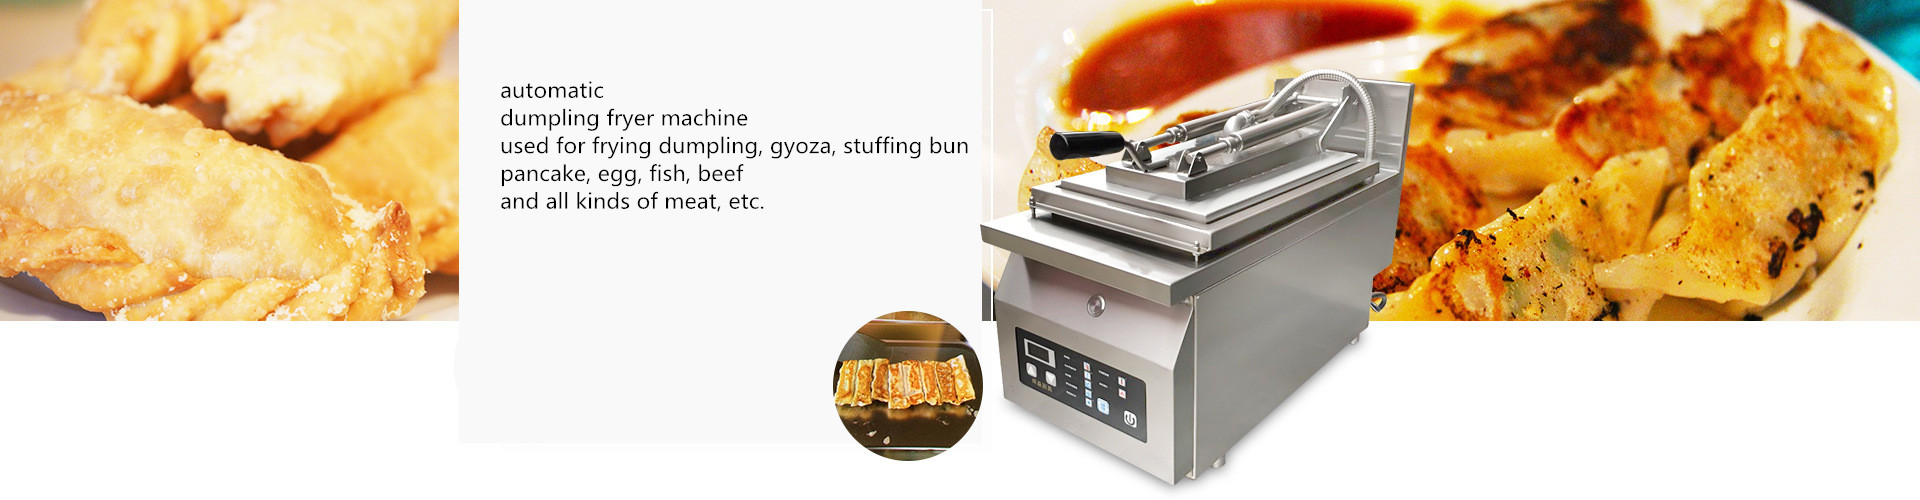 Single head electric dumpling frying machine